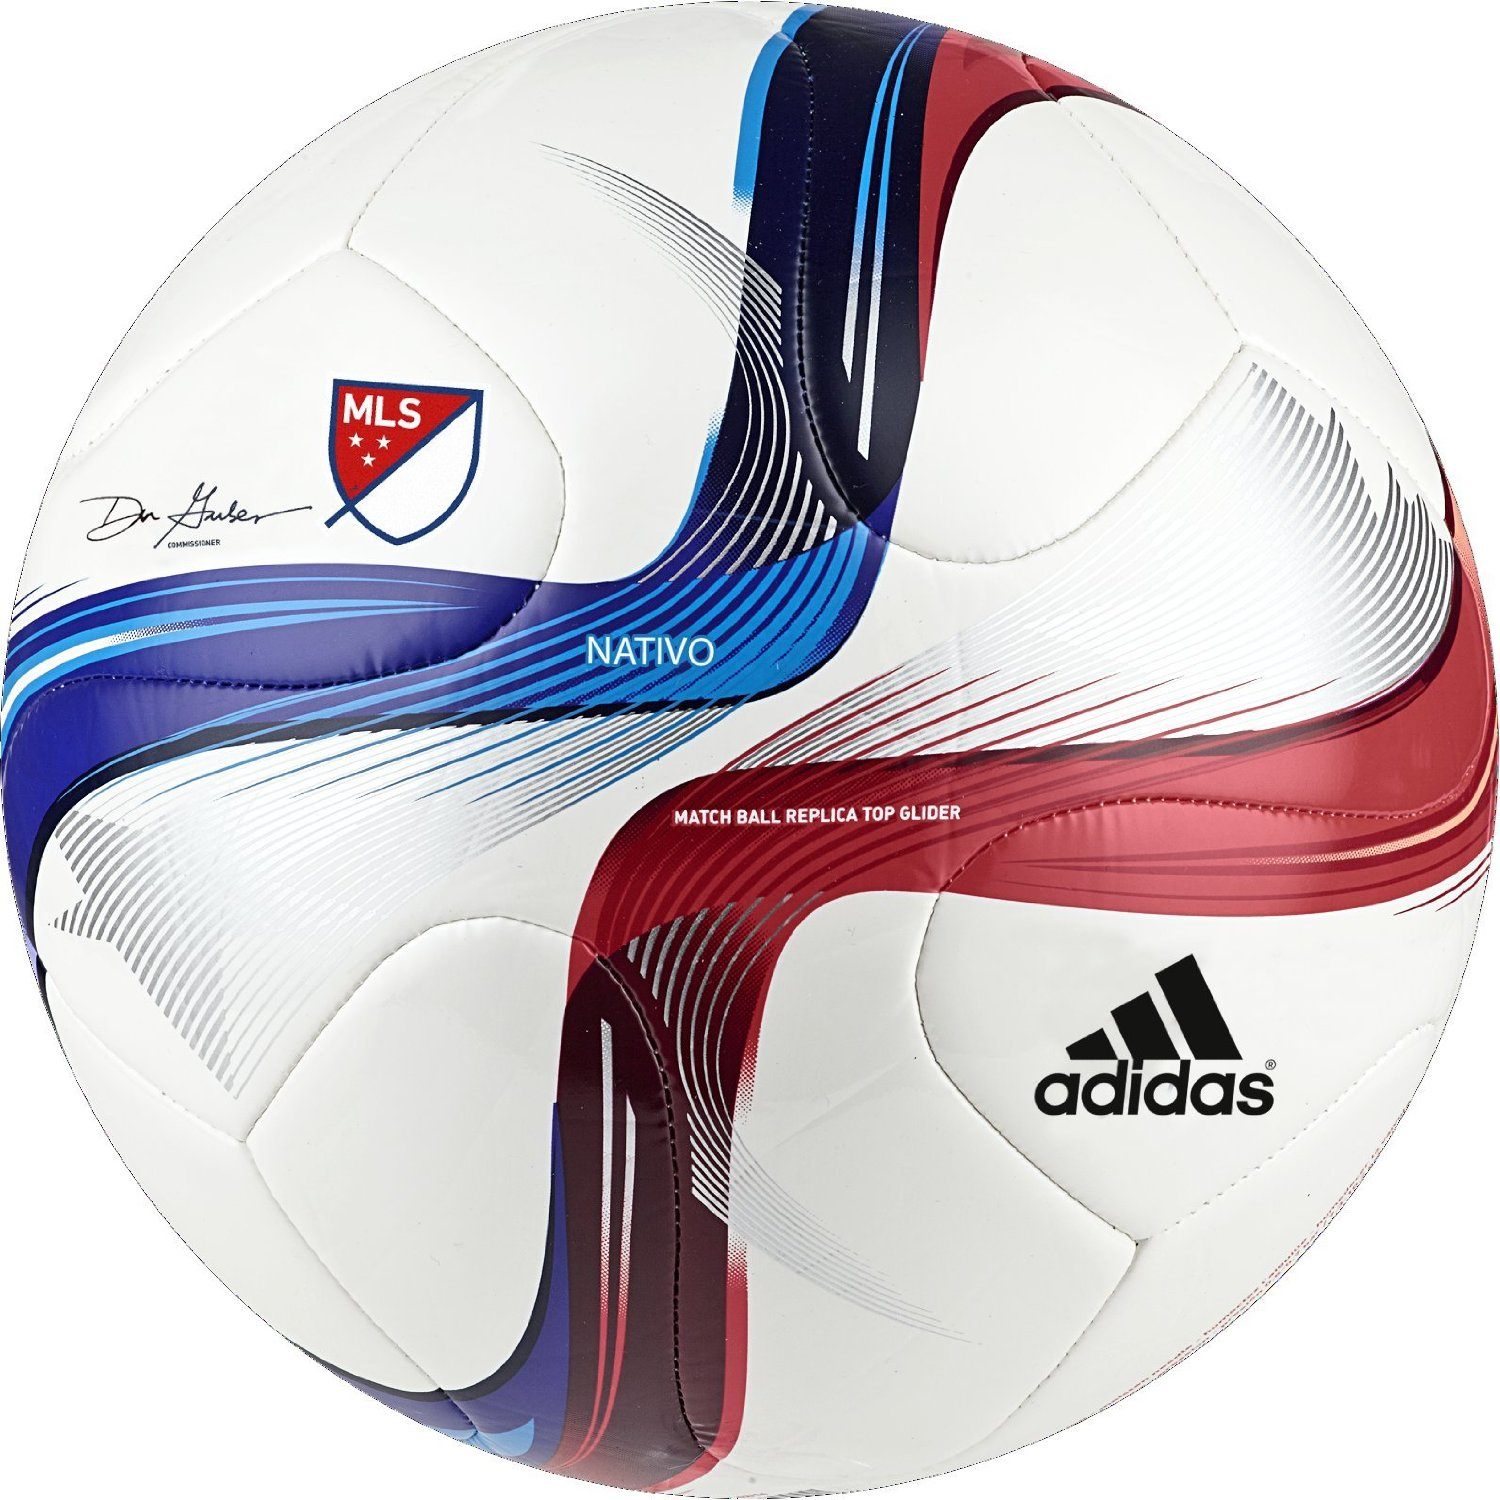 adidas mls top glider soccer ball best soccer ball under $50